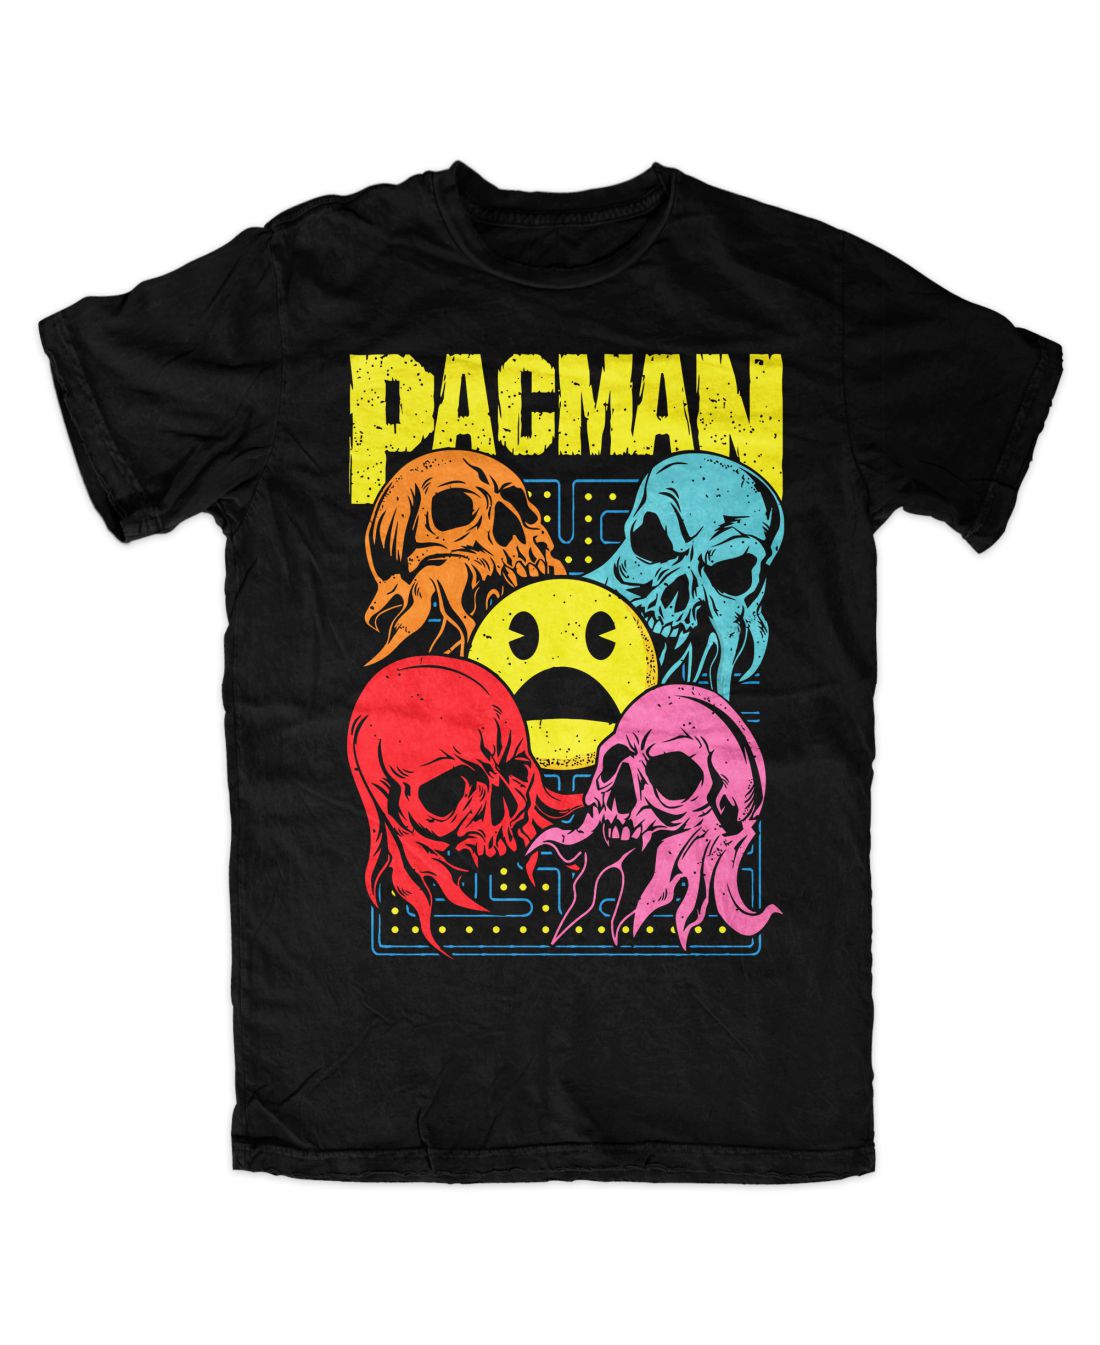 Pacman 001 metal series